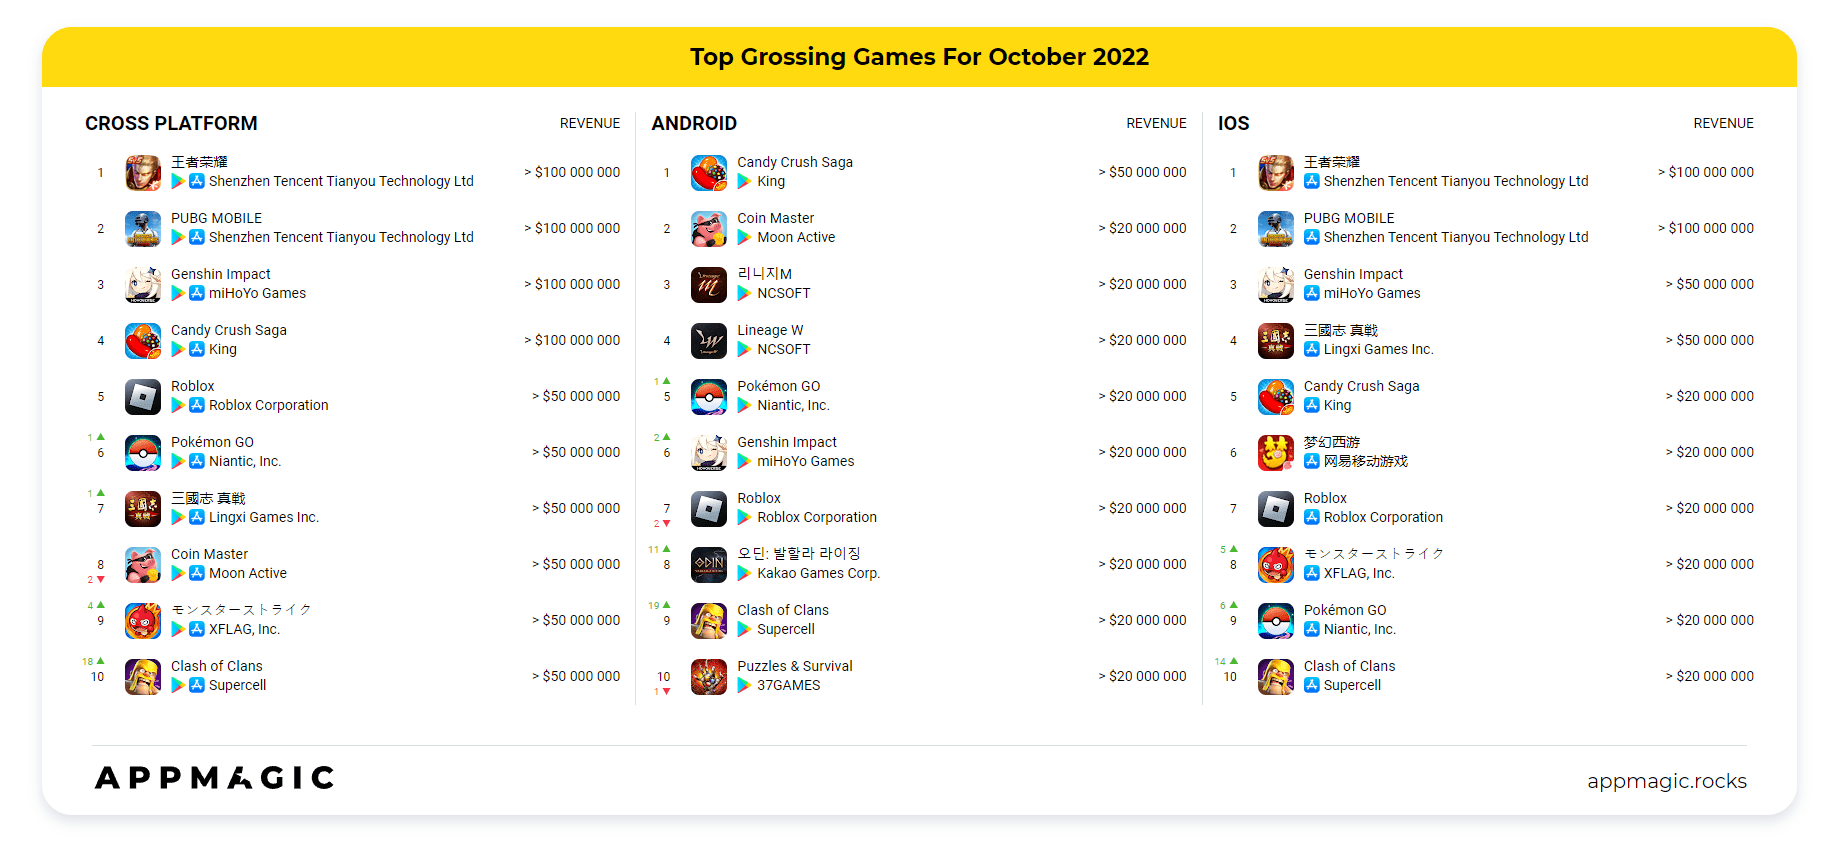 Danh sách game có doanh thu cao nhất tháng 10/2022.